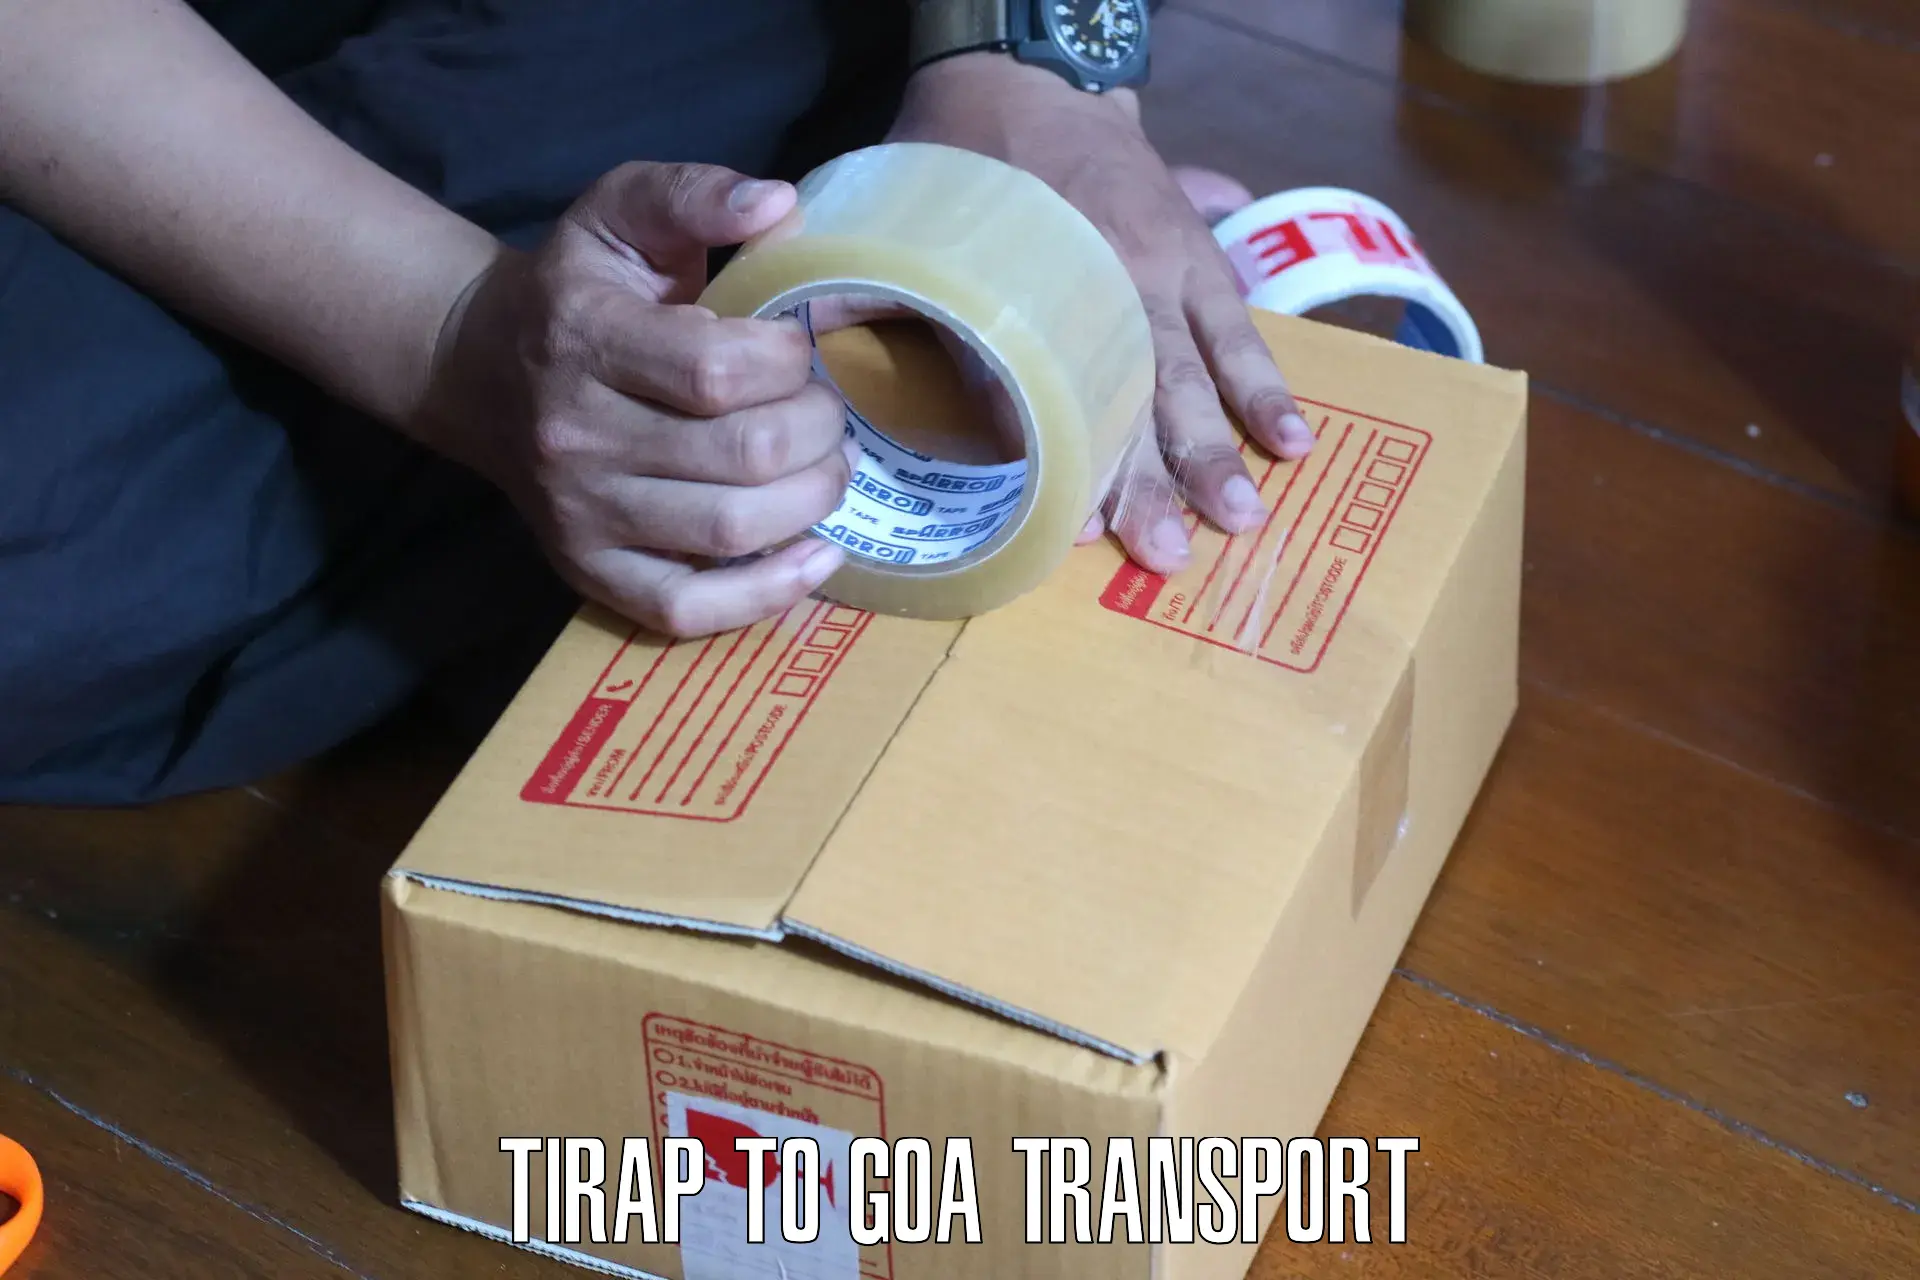 Daily transport service Tirap to Mormugao Port